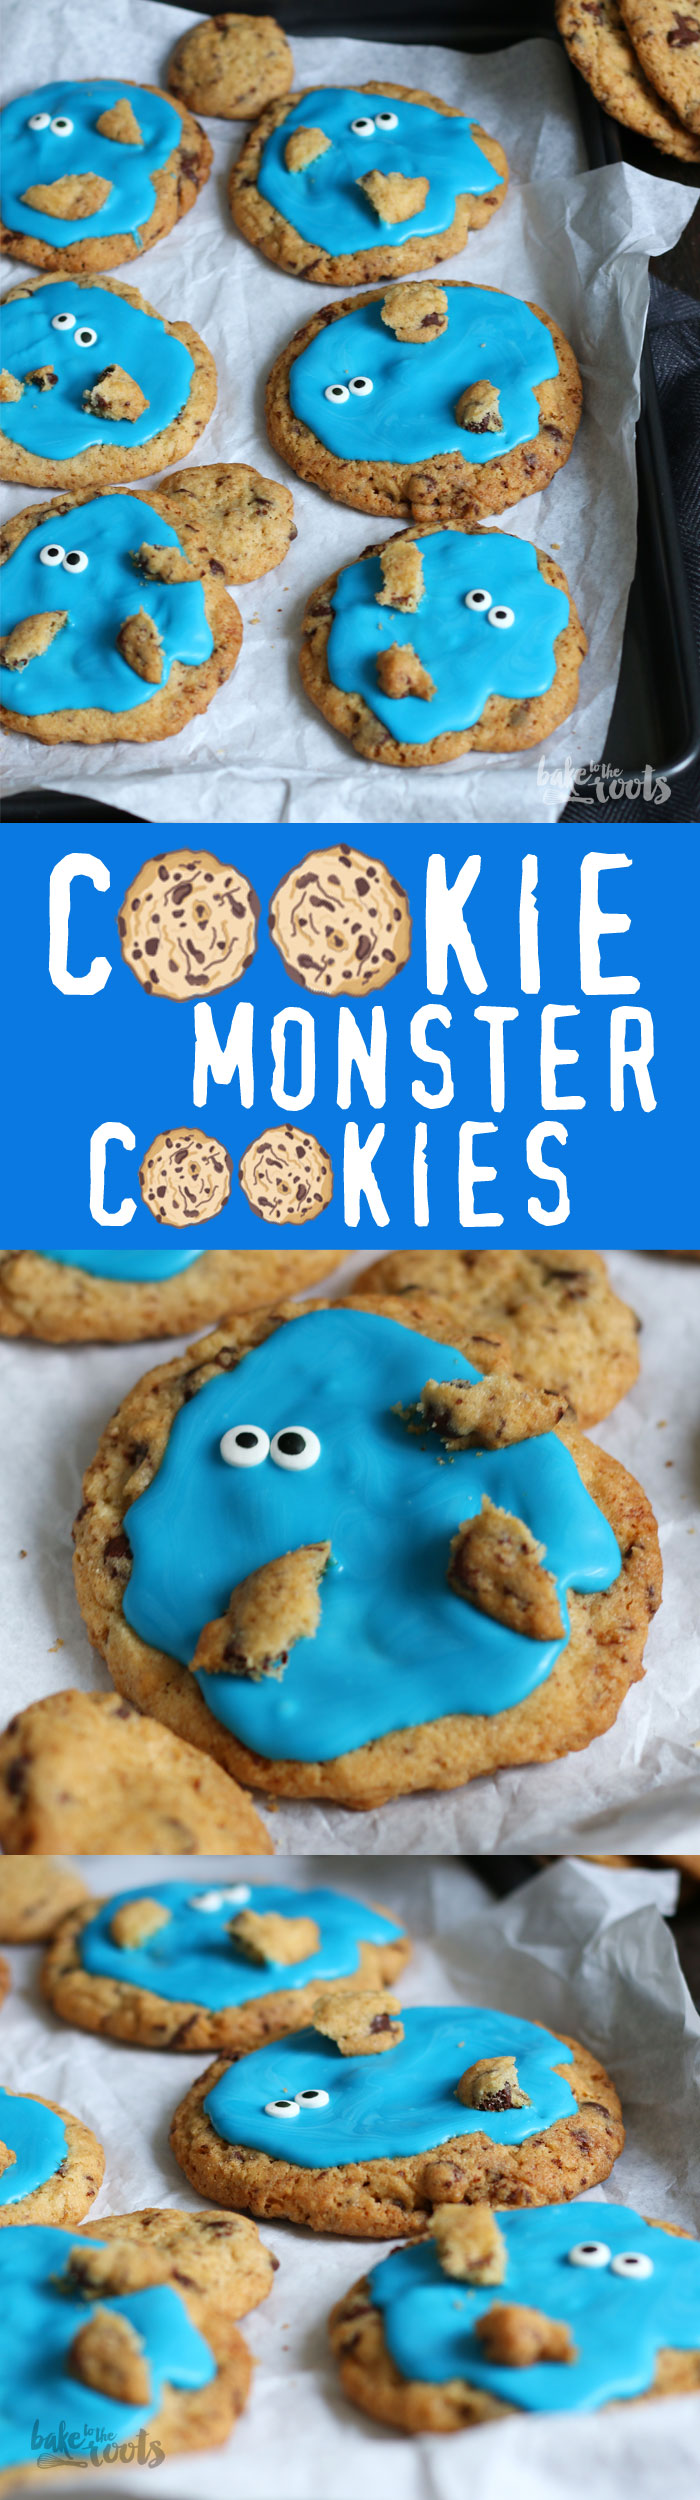 Lustige kleine Cookie Monster Kekse - genau das richtige für einen Kindergeburtstag | Bake to the roots